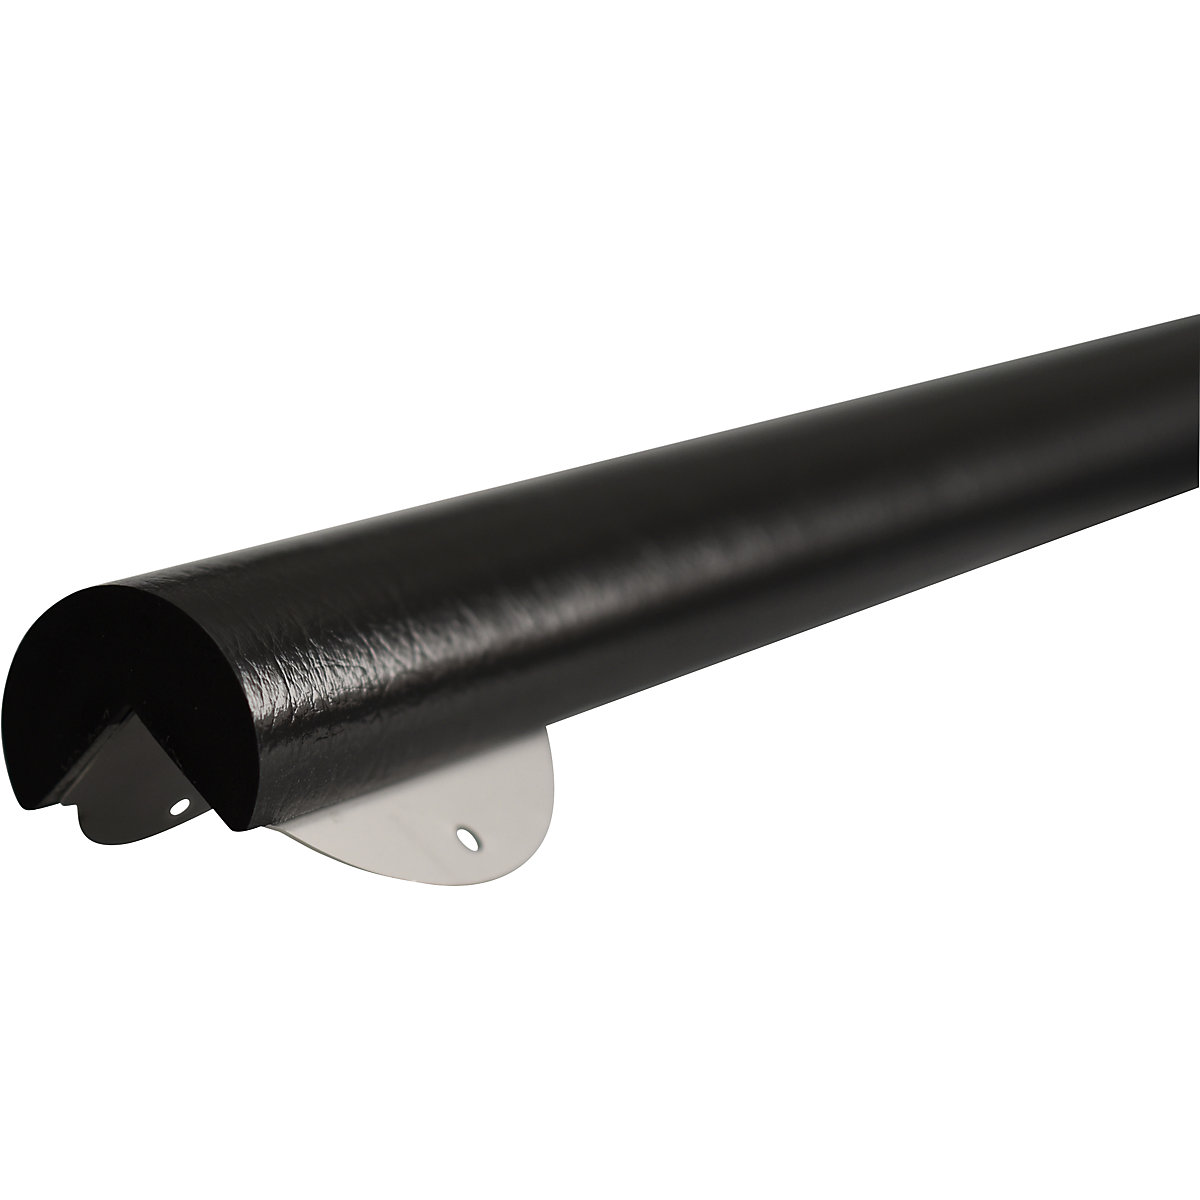 SHG – Protecție pentru colț Knuffi® cu șină de montaj, tip A+, bucată de 1 m, negru